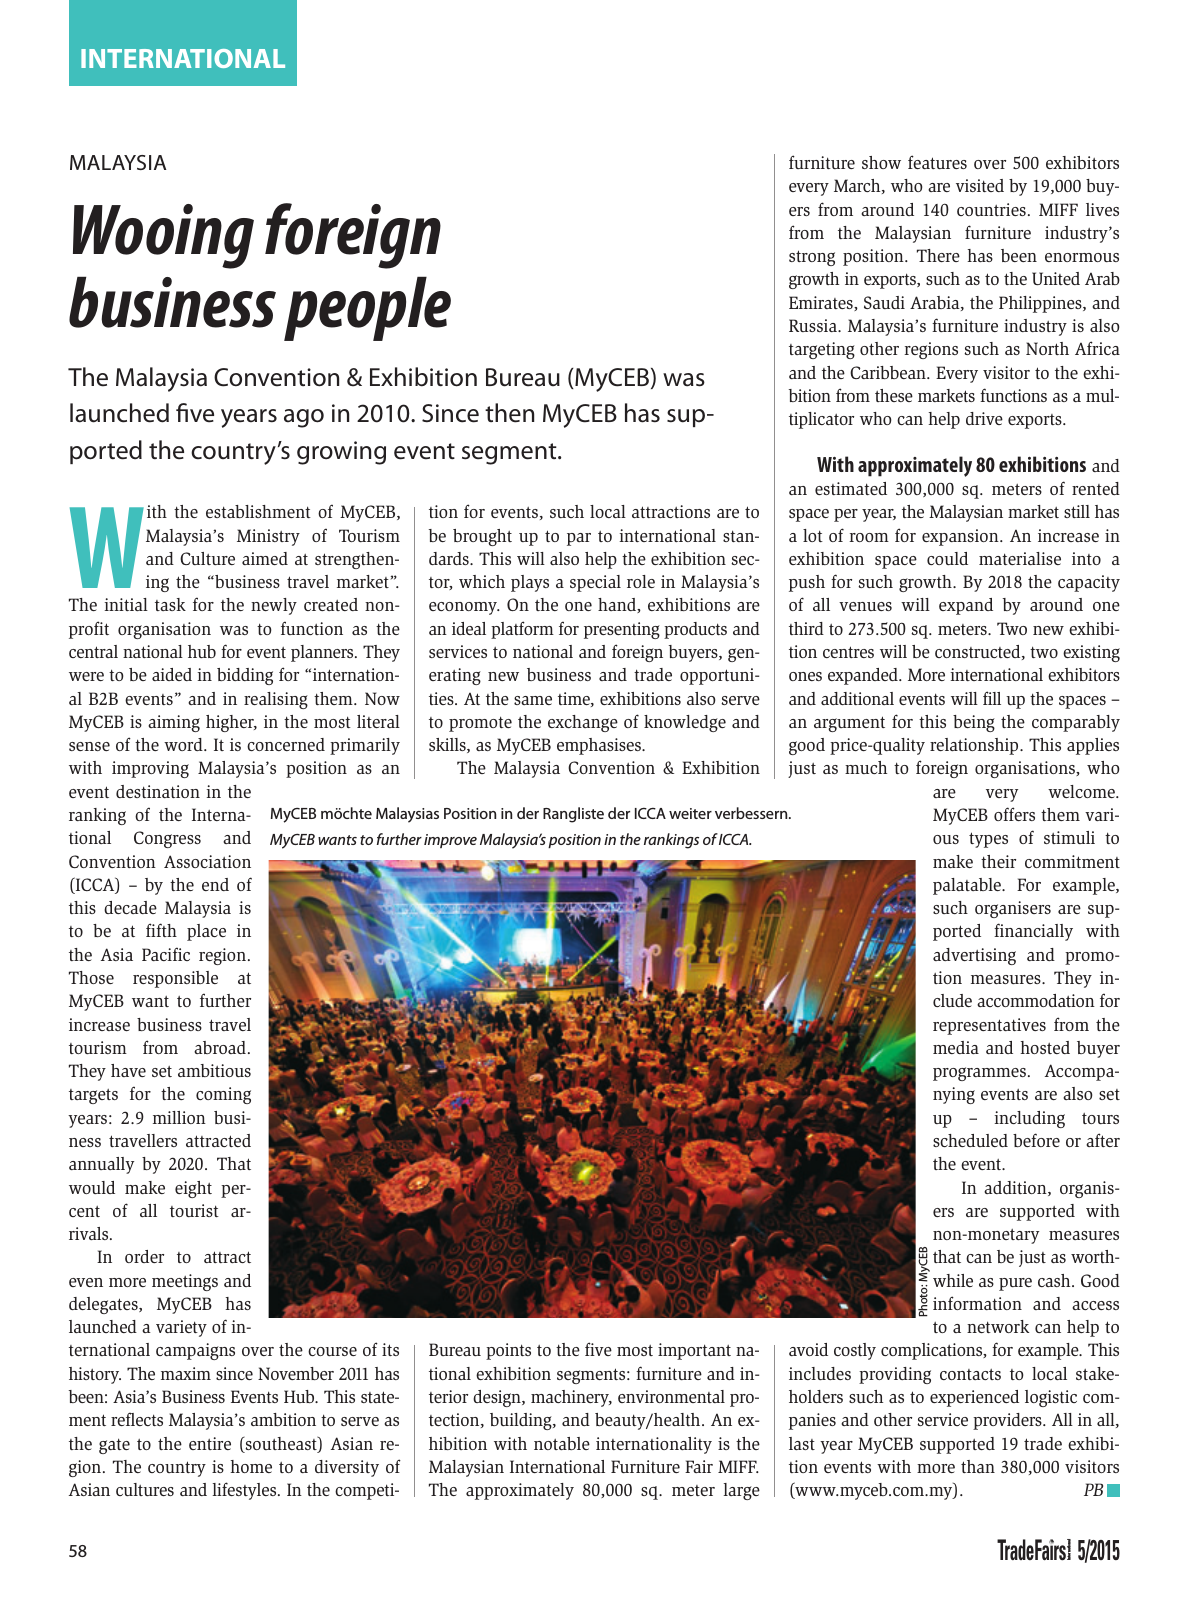 Vorschau TFI Trade-Fairs-International 05/2015 Seite 58